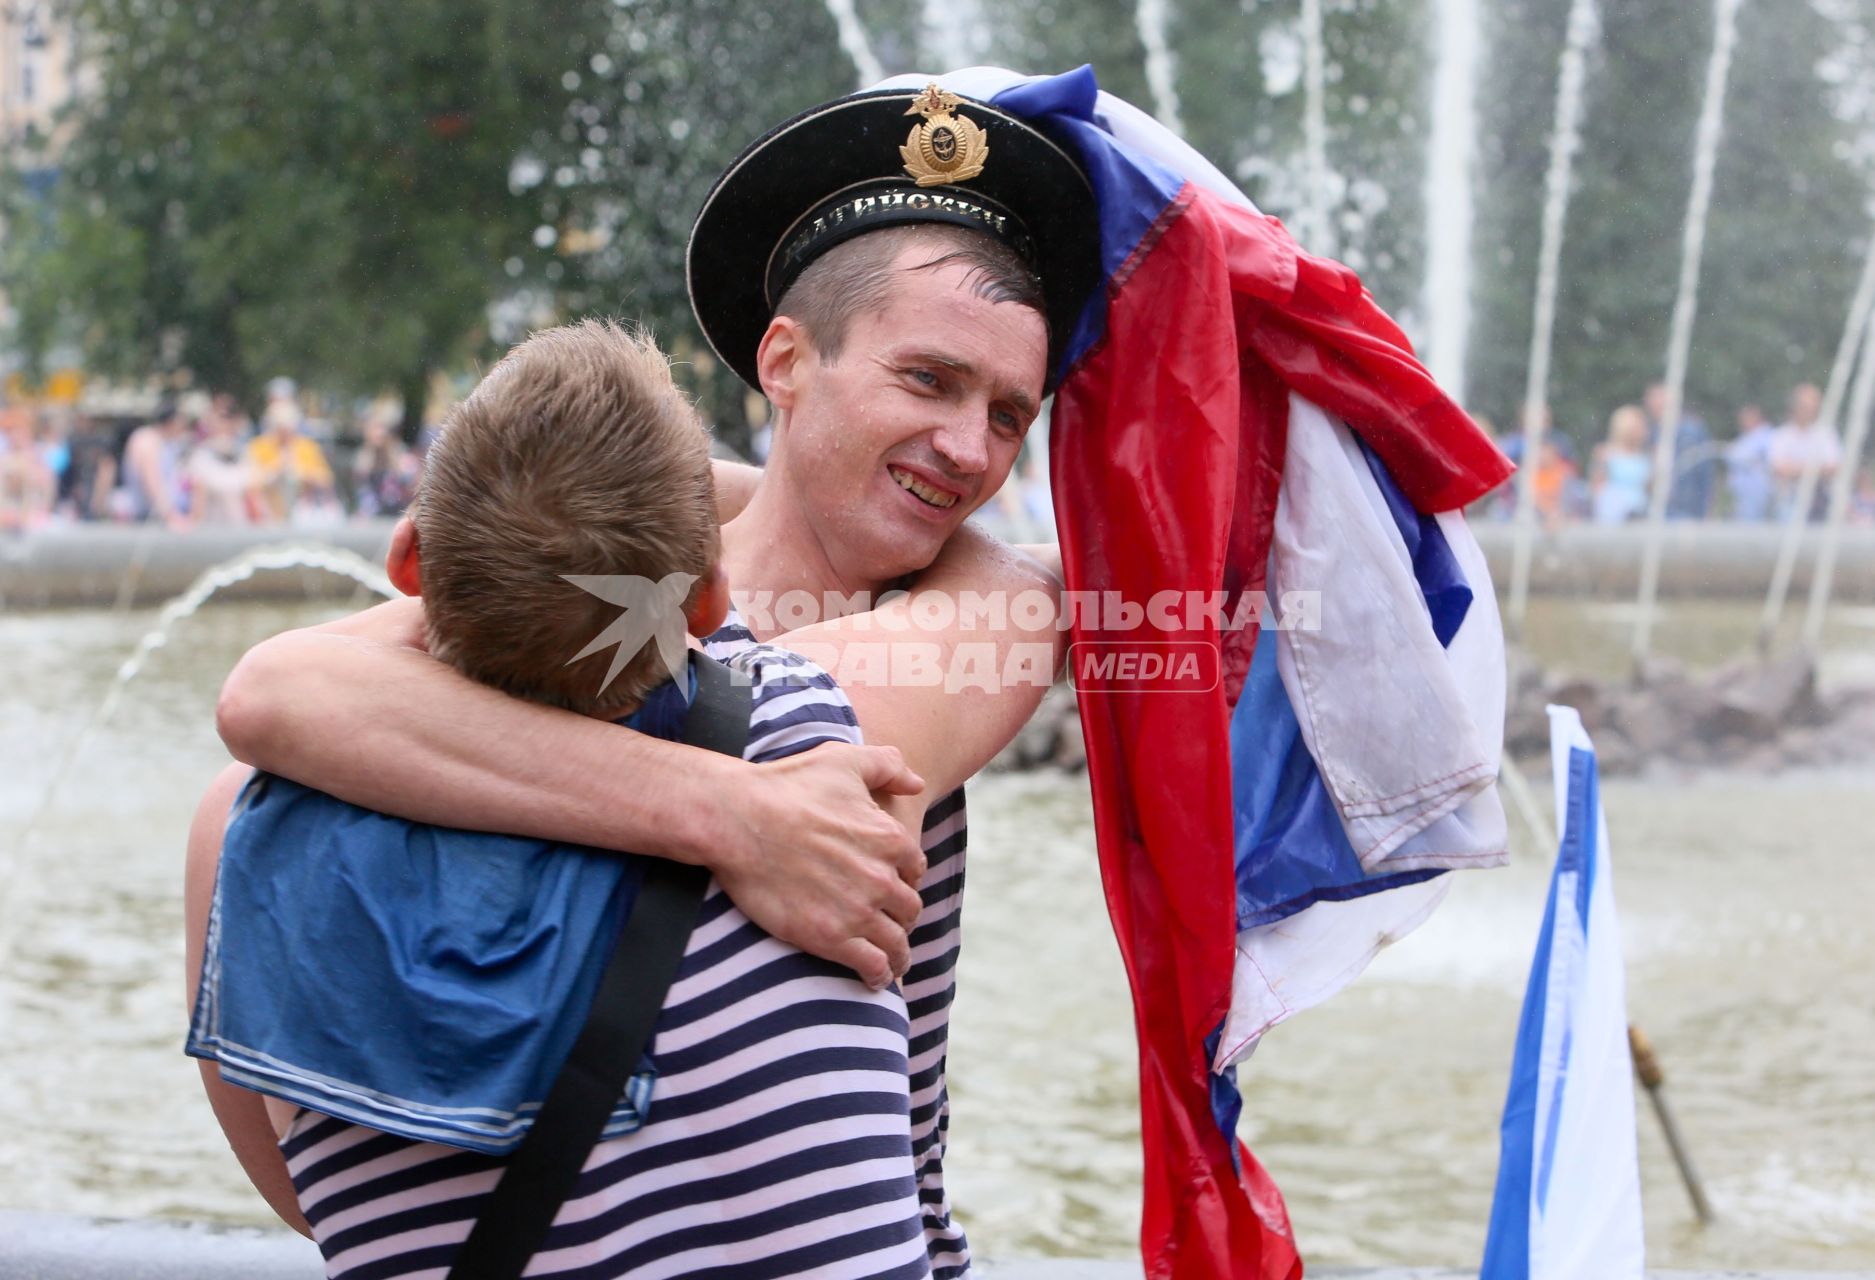 Санкт-Петербург. Моряки купаются в фонтане во время празднования Дня Военно-морского флота РФ.